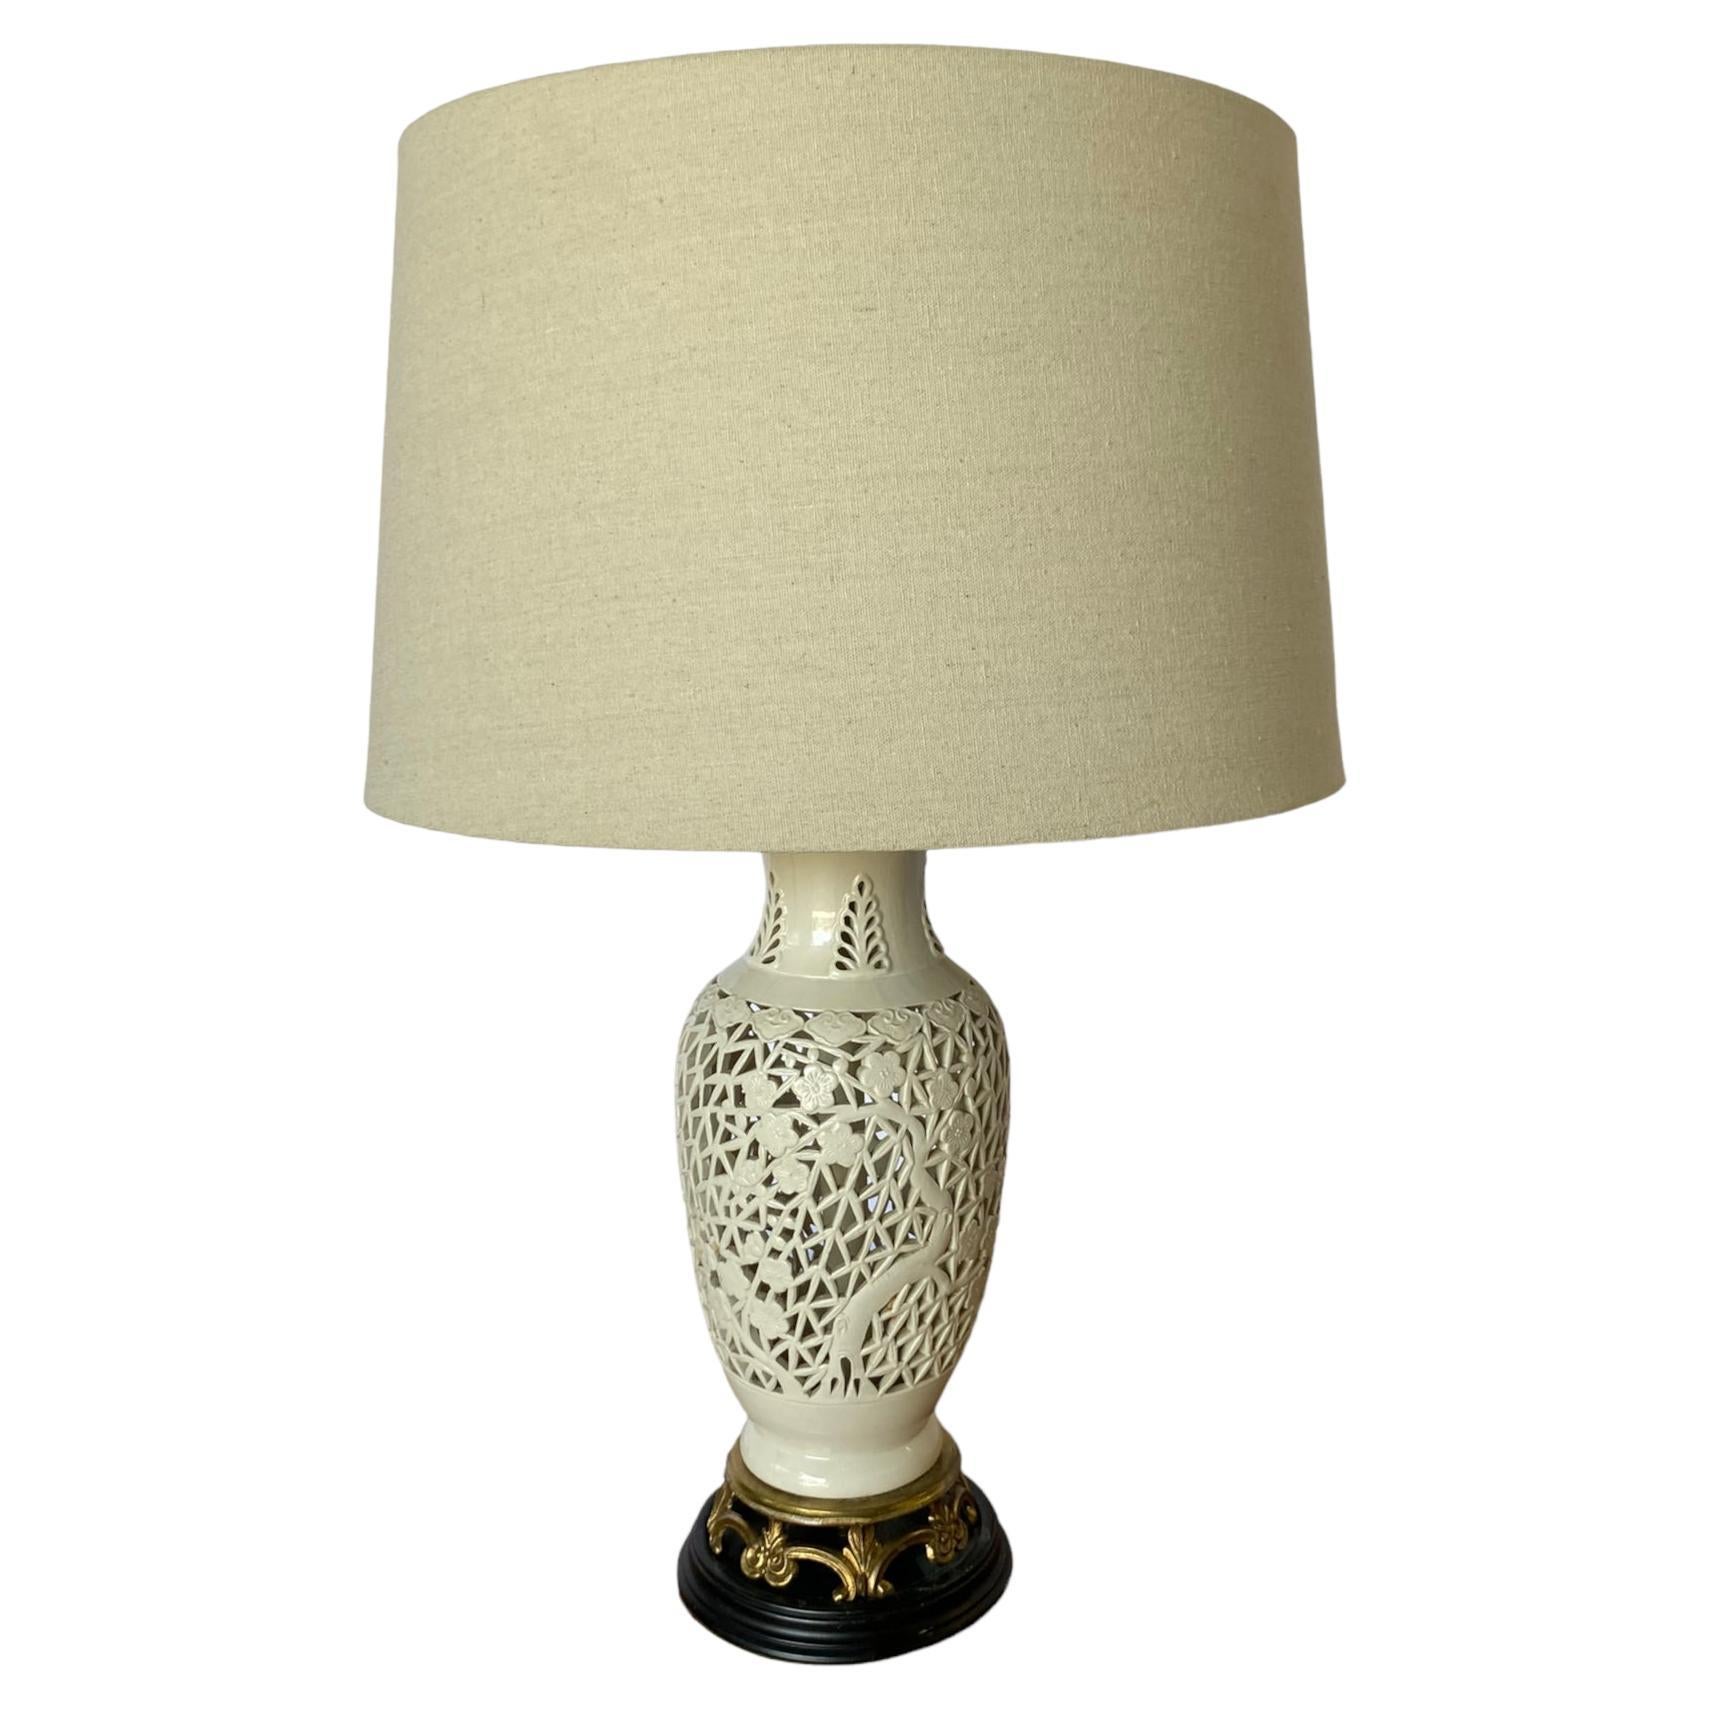 Blanc De Chine Pierced Porcelain Table Lamp with Floral Motif